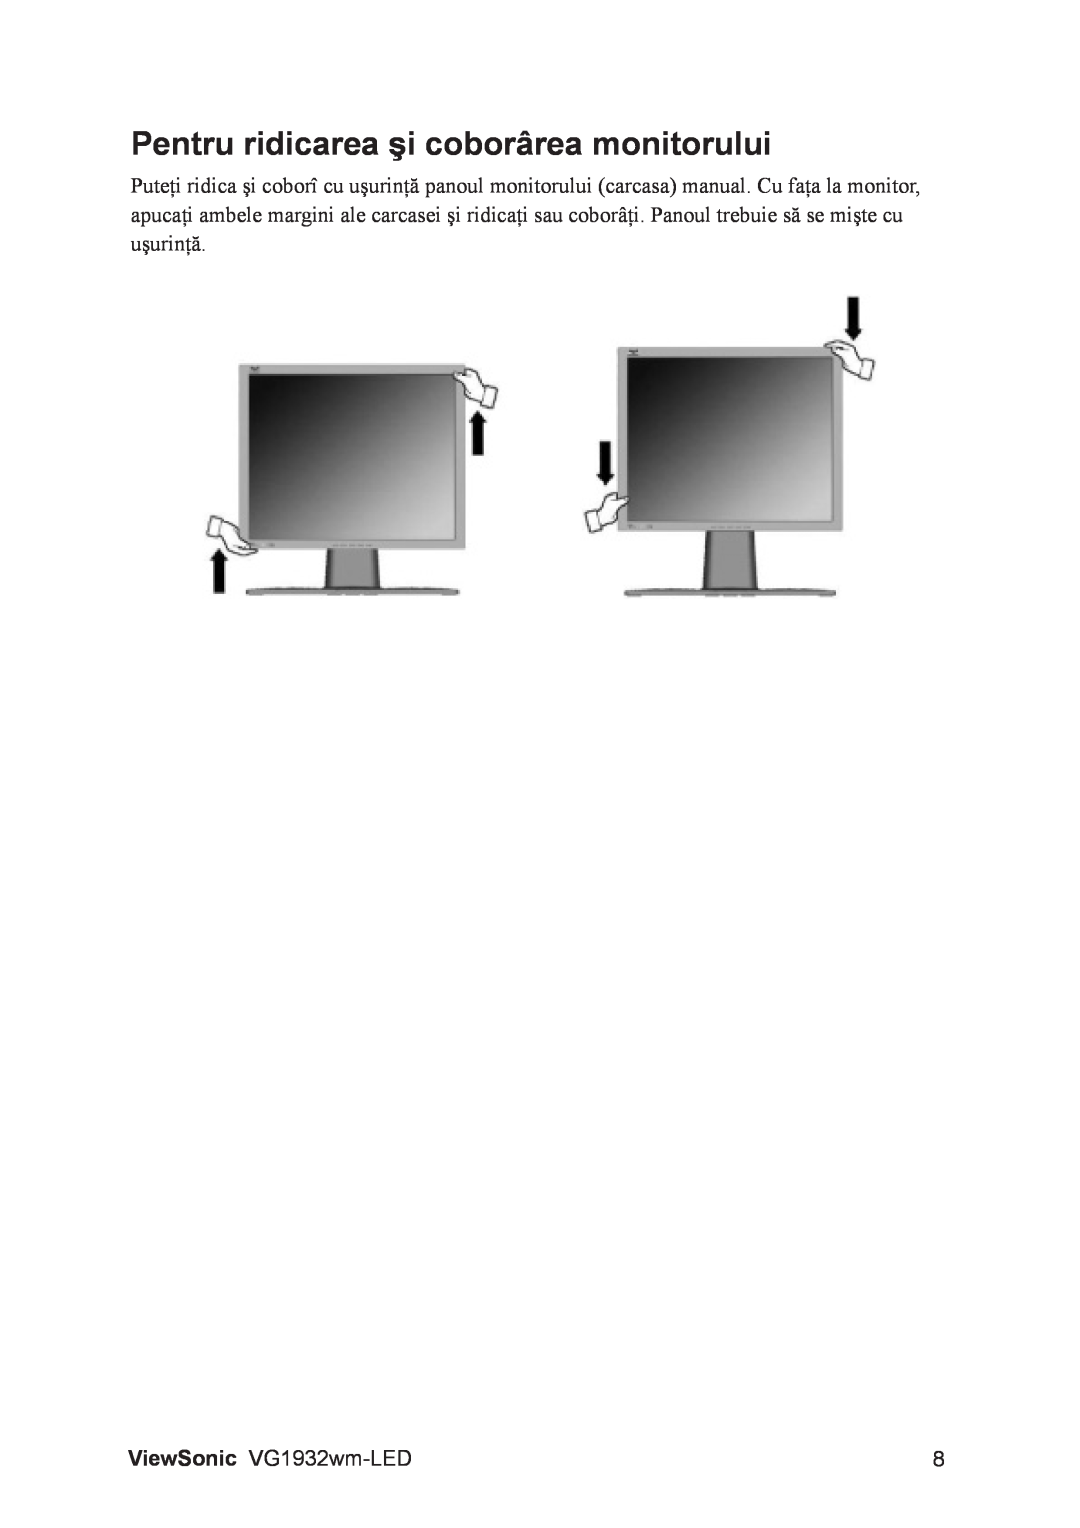 ViewSonic VG1932WM-LED manual Pentru ridicarea şi coborârea monitorului 